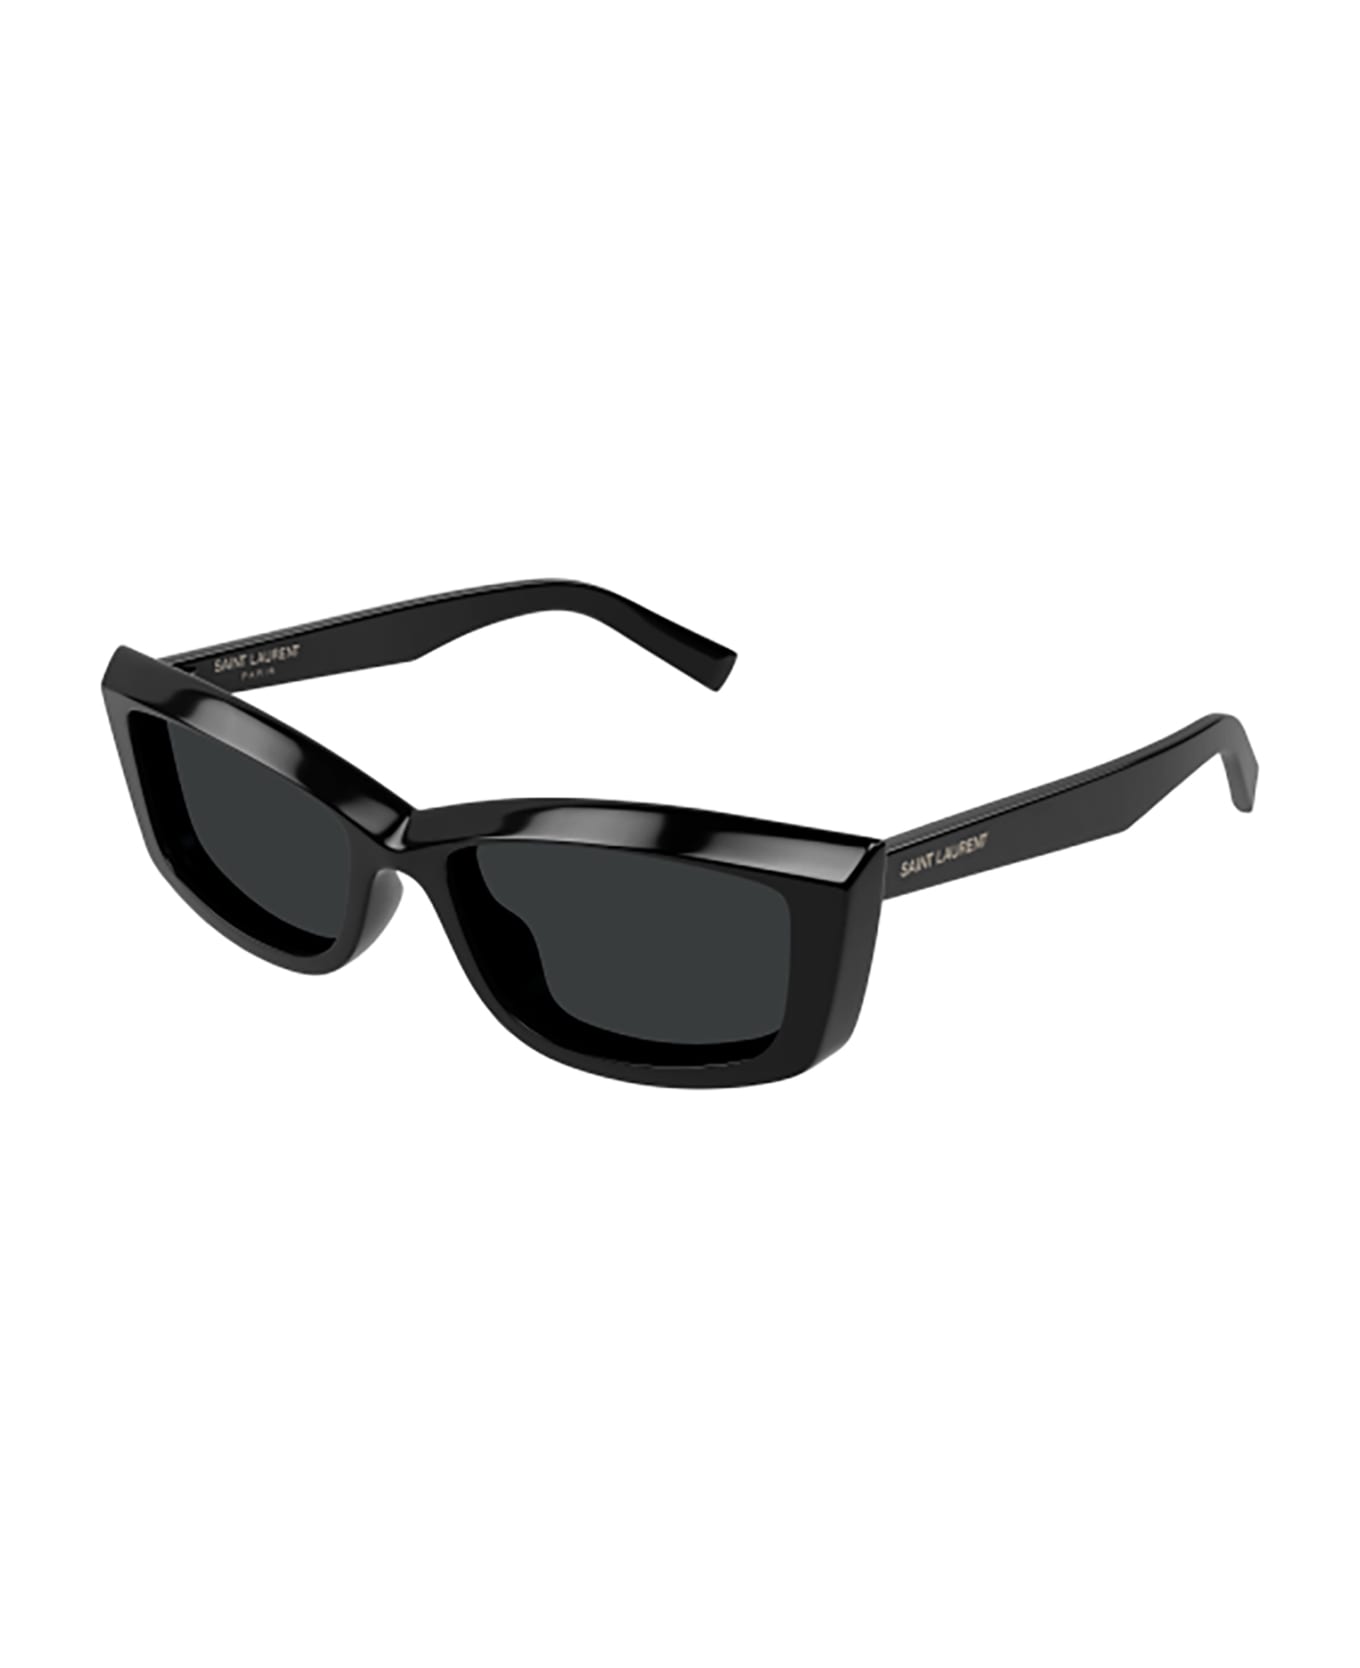 Saint Laurent Eyewear SL 658 Sunglasses - Black Black Black サングラス